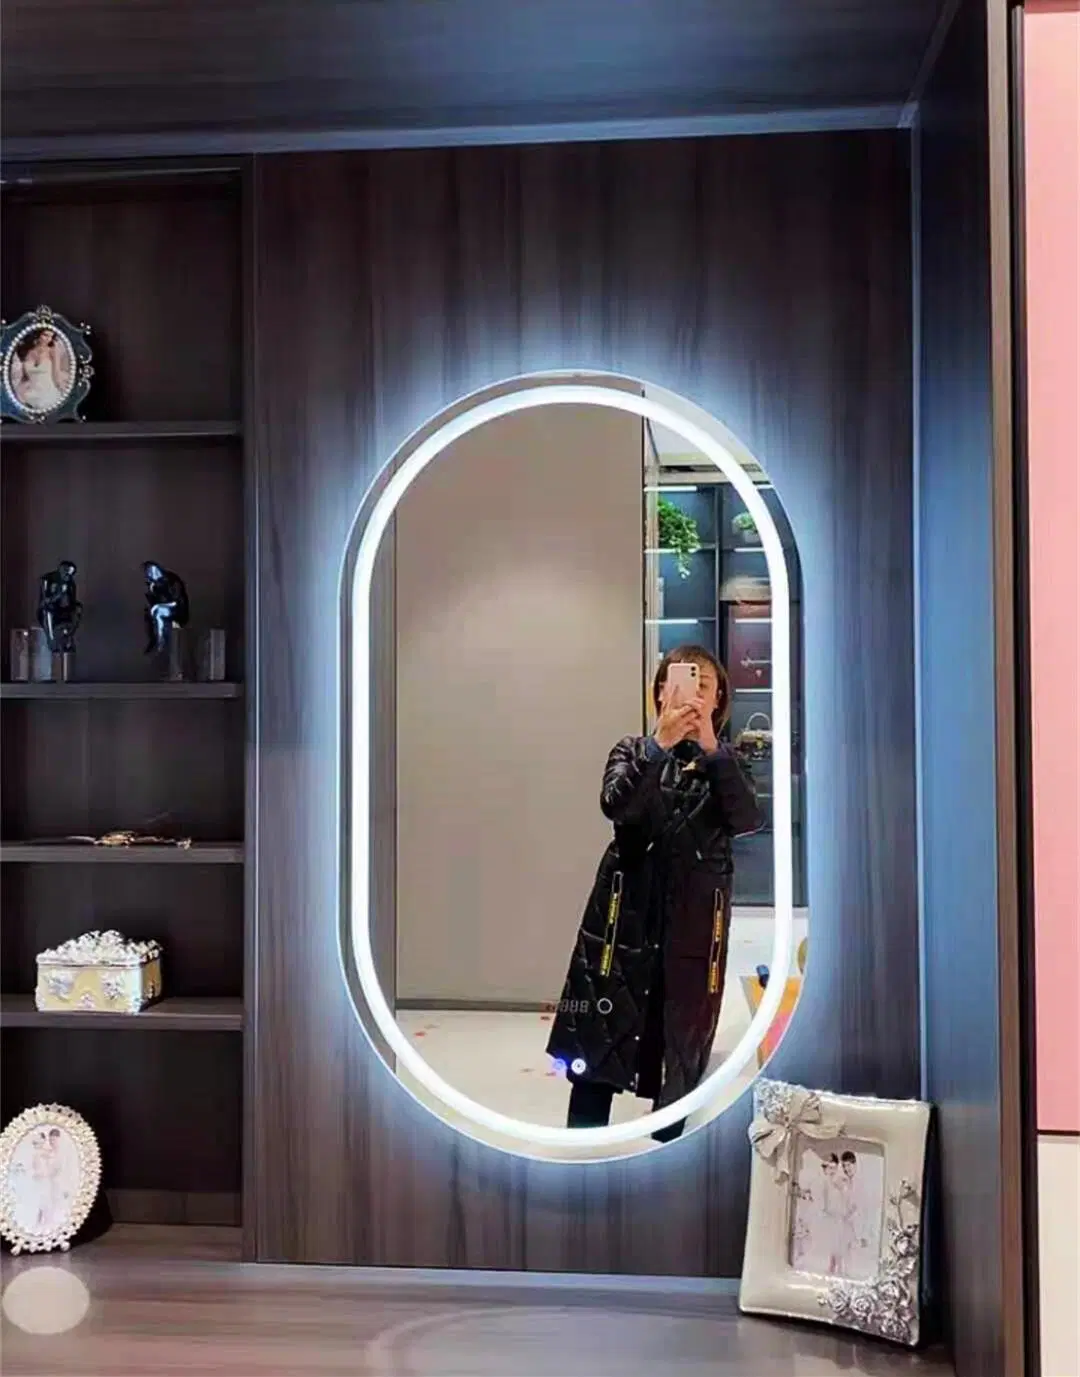 ديكور منزلي/صالون تجميل مرآة زجاجية مضادة للضباب للحمام بتقنية LED ذكية لمنع الضباب